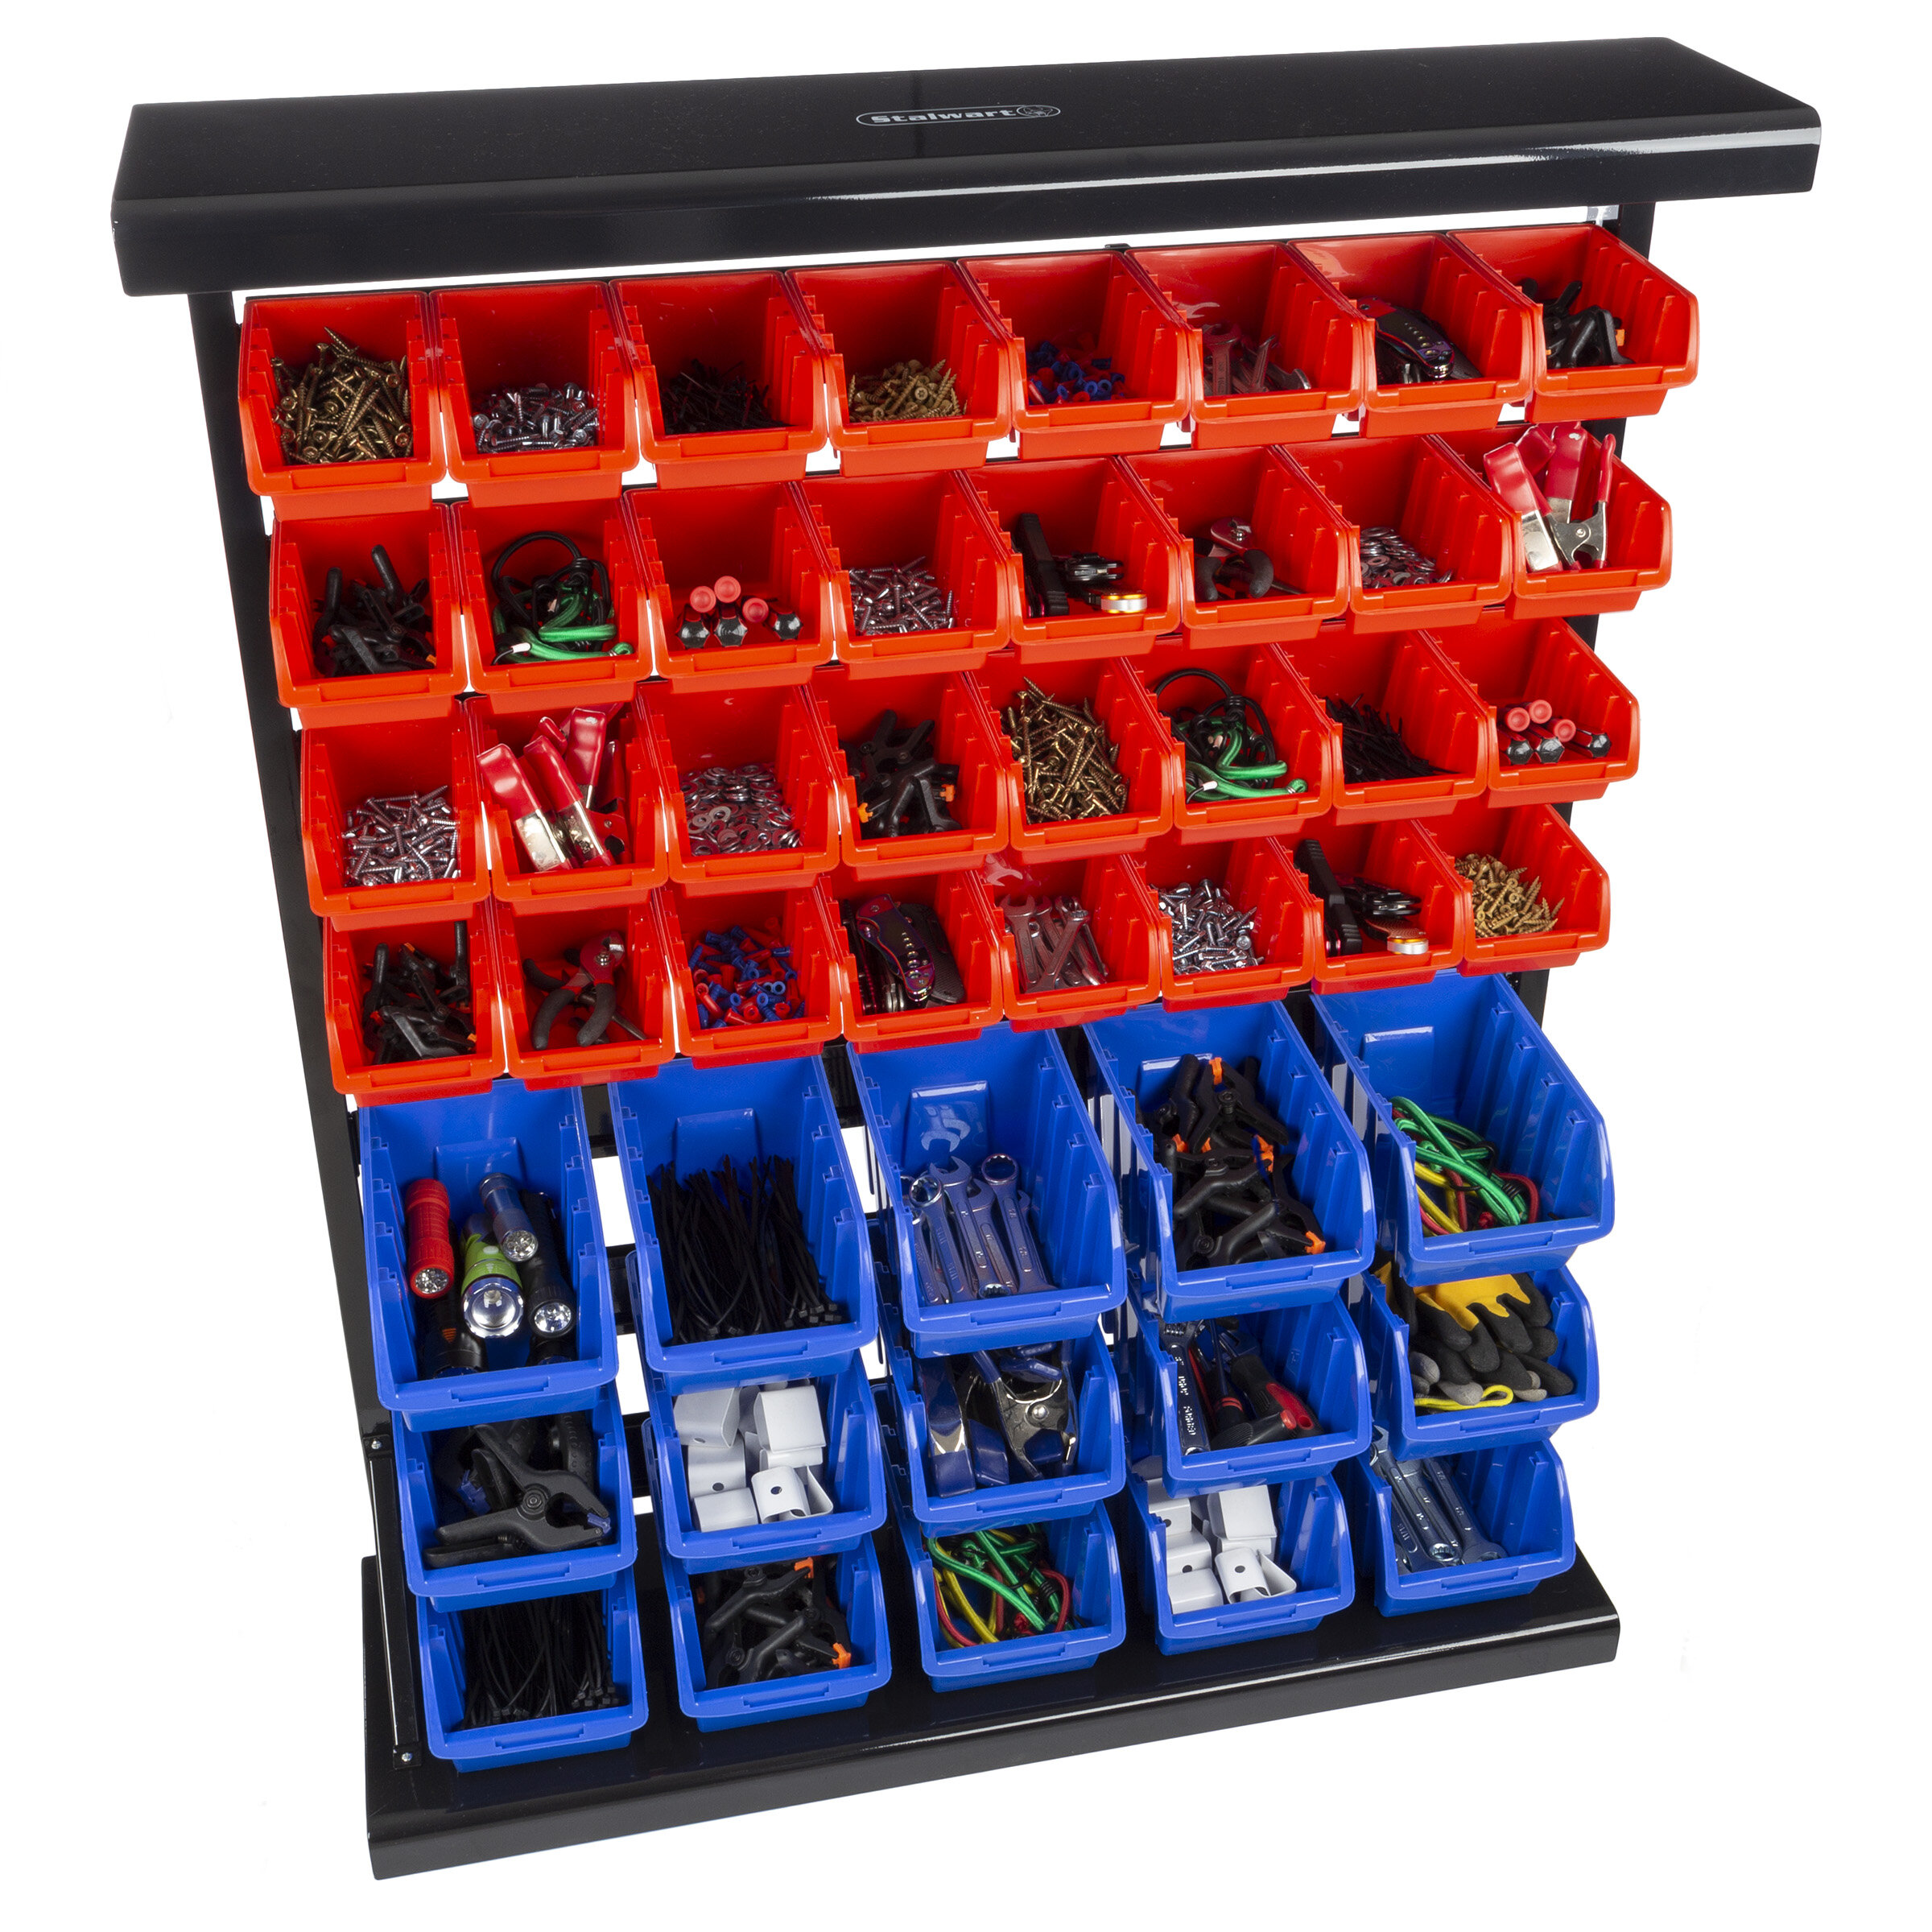 https://assets.wfcdn.com/im/27422945/compr-r85/6252/62529315/rangement-a-outils-47-bacs-contenant-mural-pour-organisation-de-garage-par-stalwart-rouge-bleu.jpg